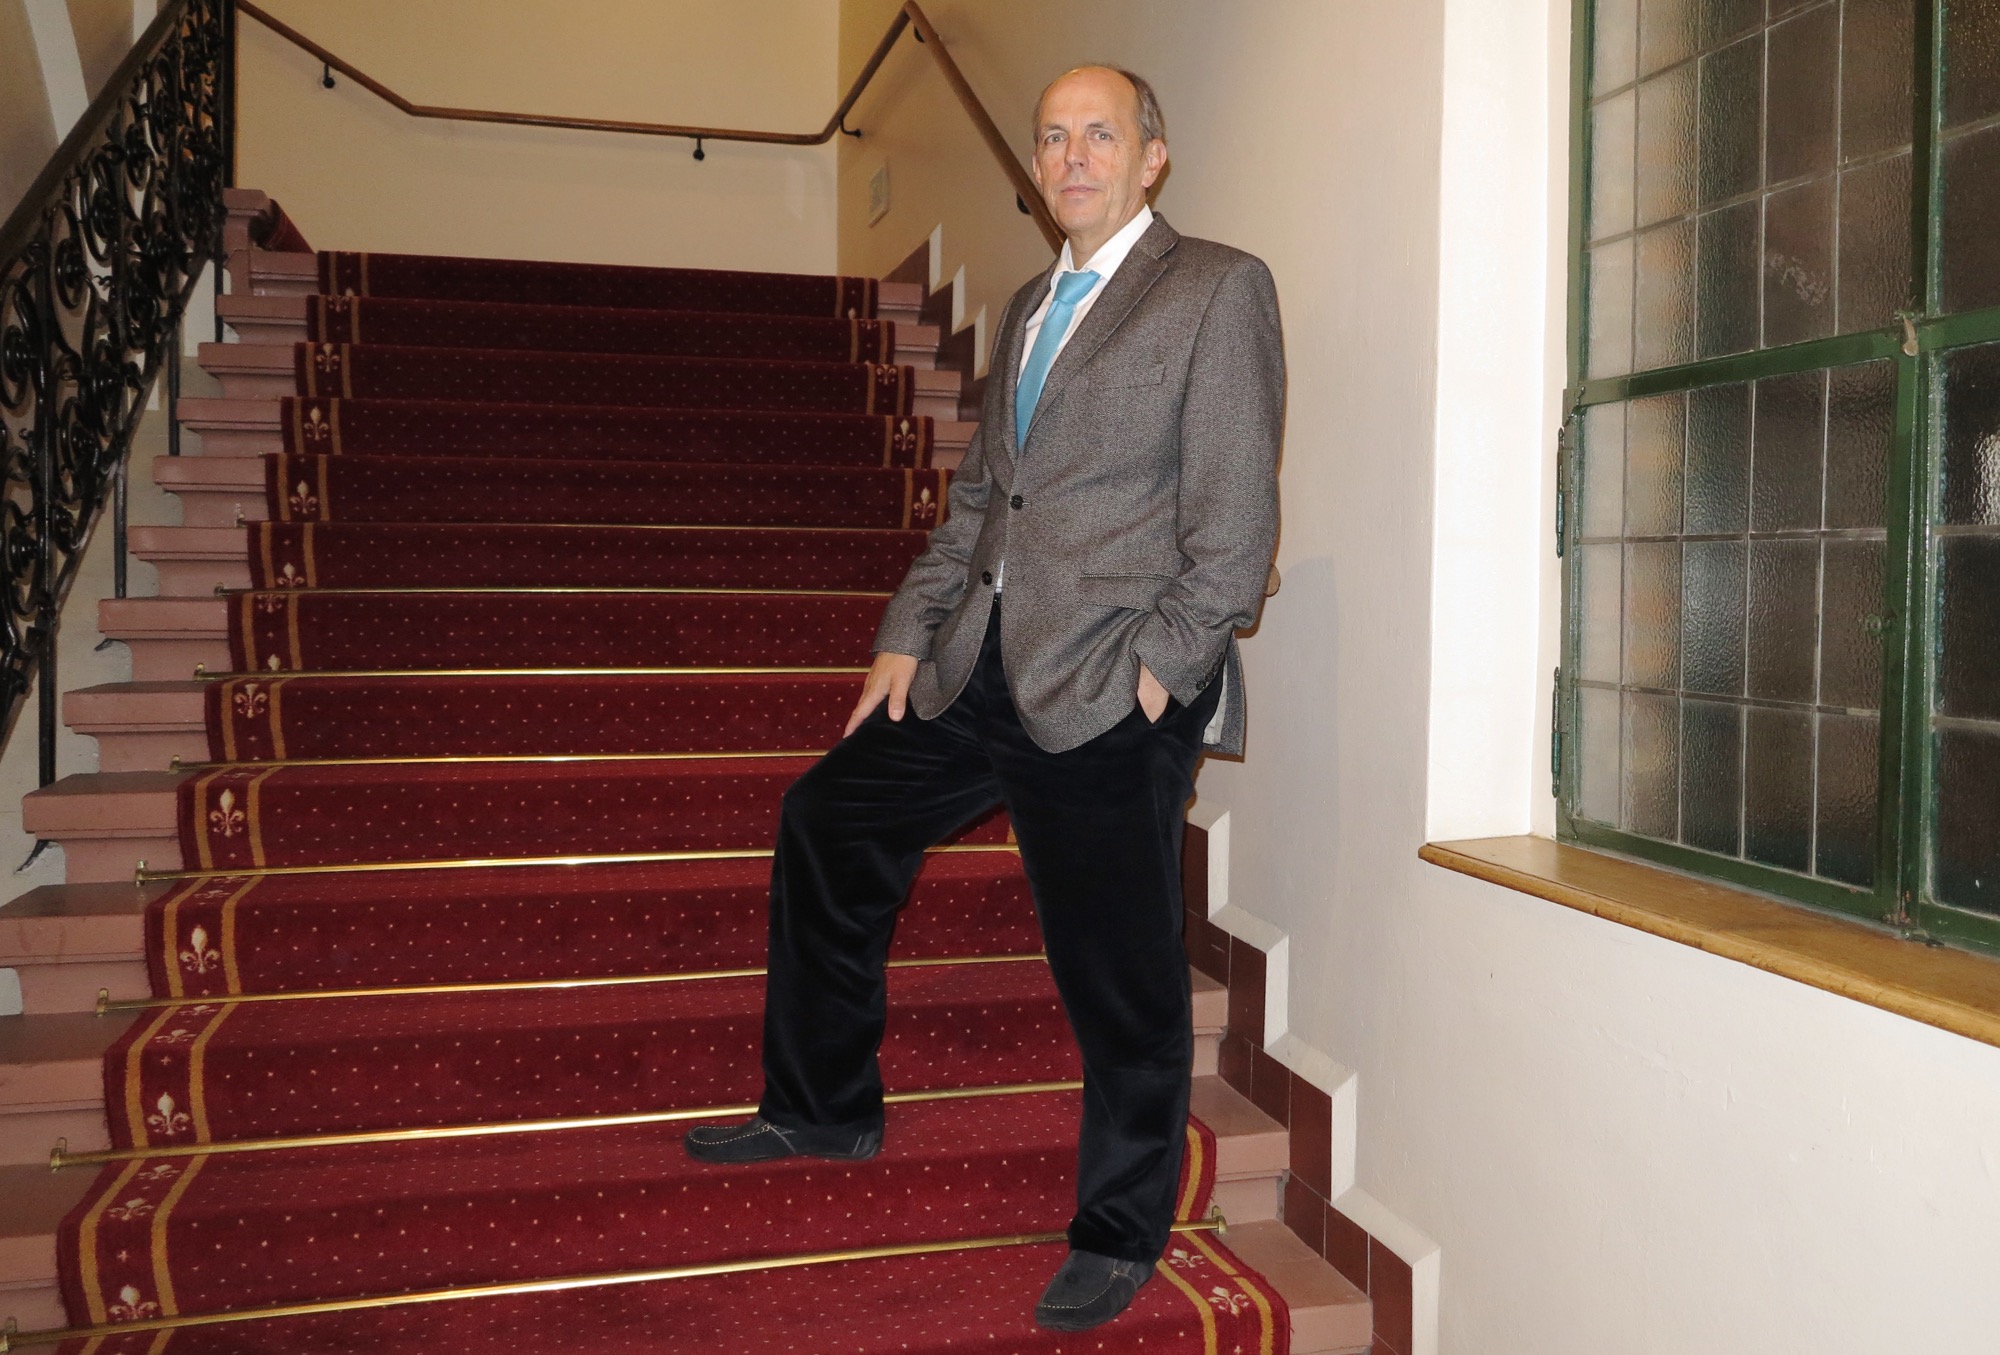 Über diese Treppe werden sie gehen: Hans-Peter Fontana, Wirt des Restaurants Safran-Zunft, erwartet zum Gala-Diner der OSZE-Ministerratskonferenz illustre und sicherheitstechnisch heikle Gäste.